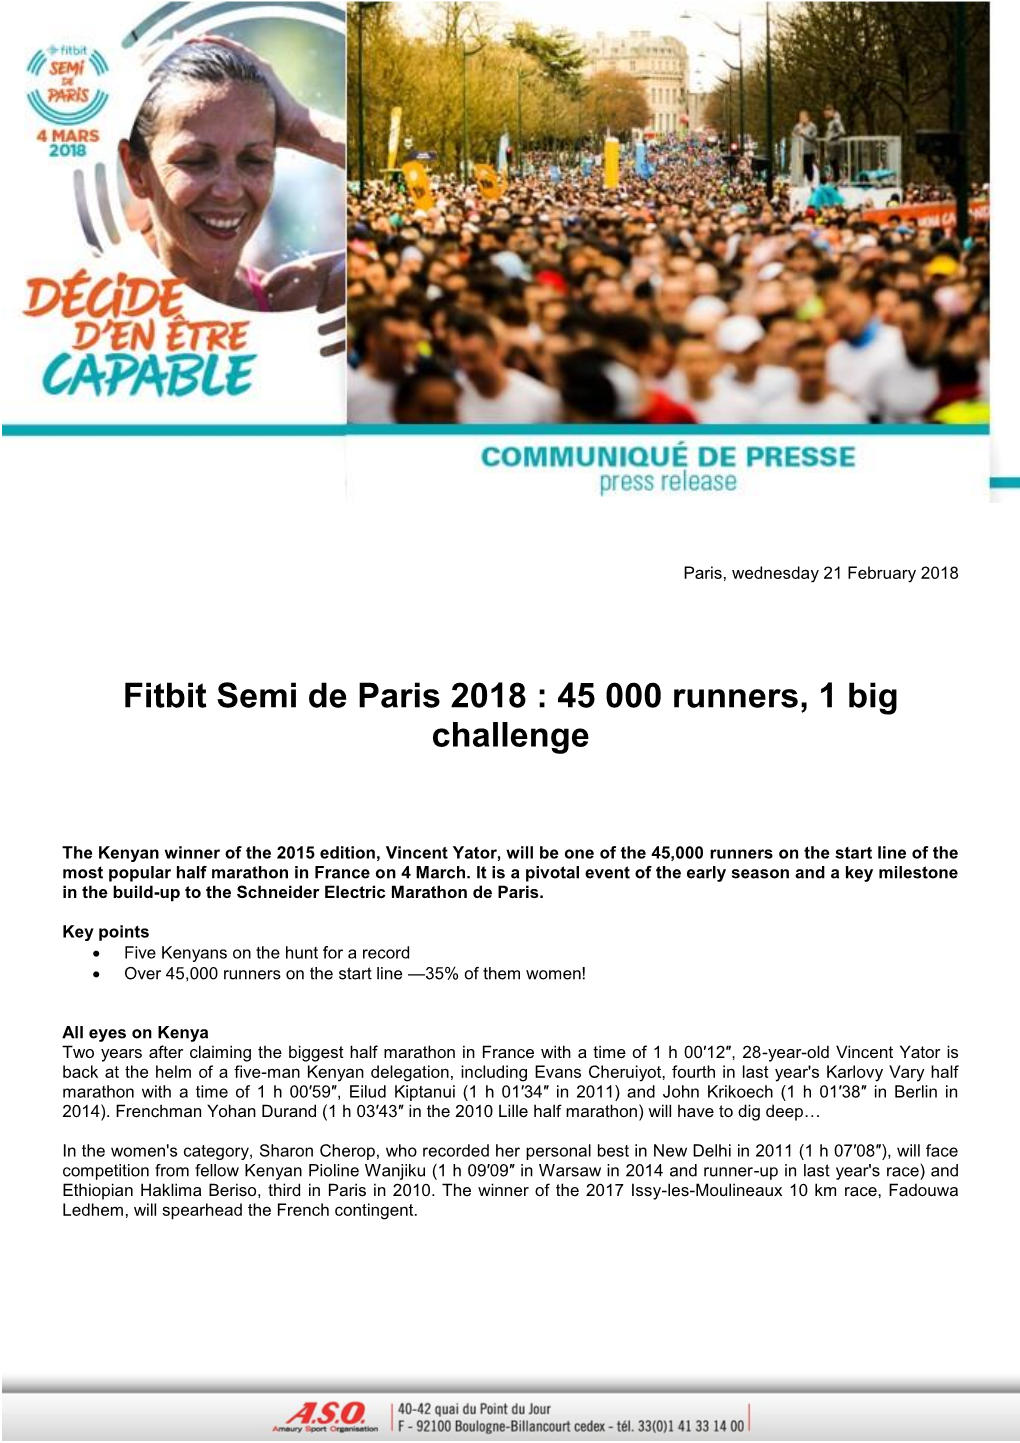 Fitbit Semi De Paris 2018 : 45 000 Runners, 1 Big Challenge